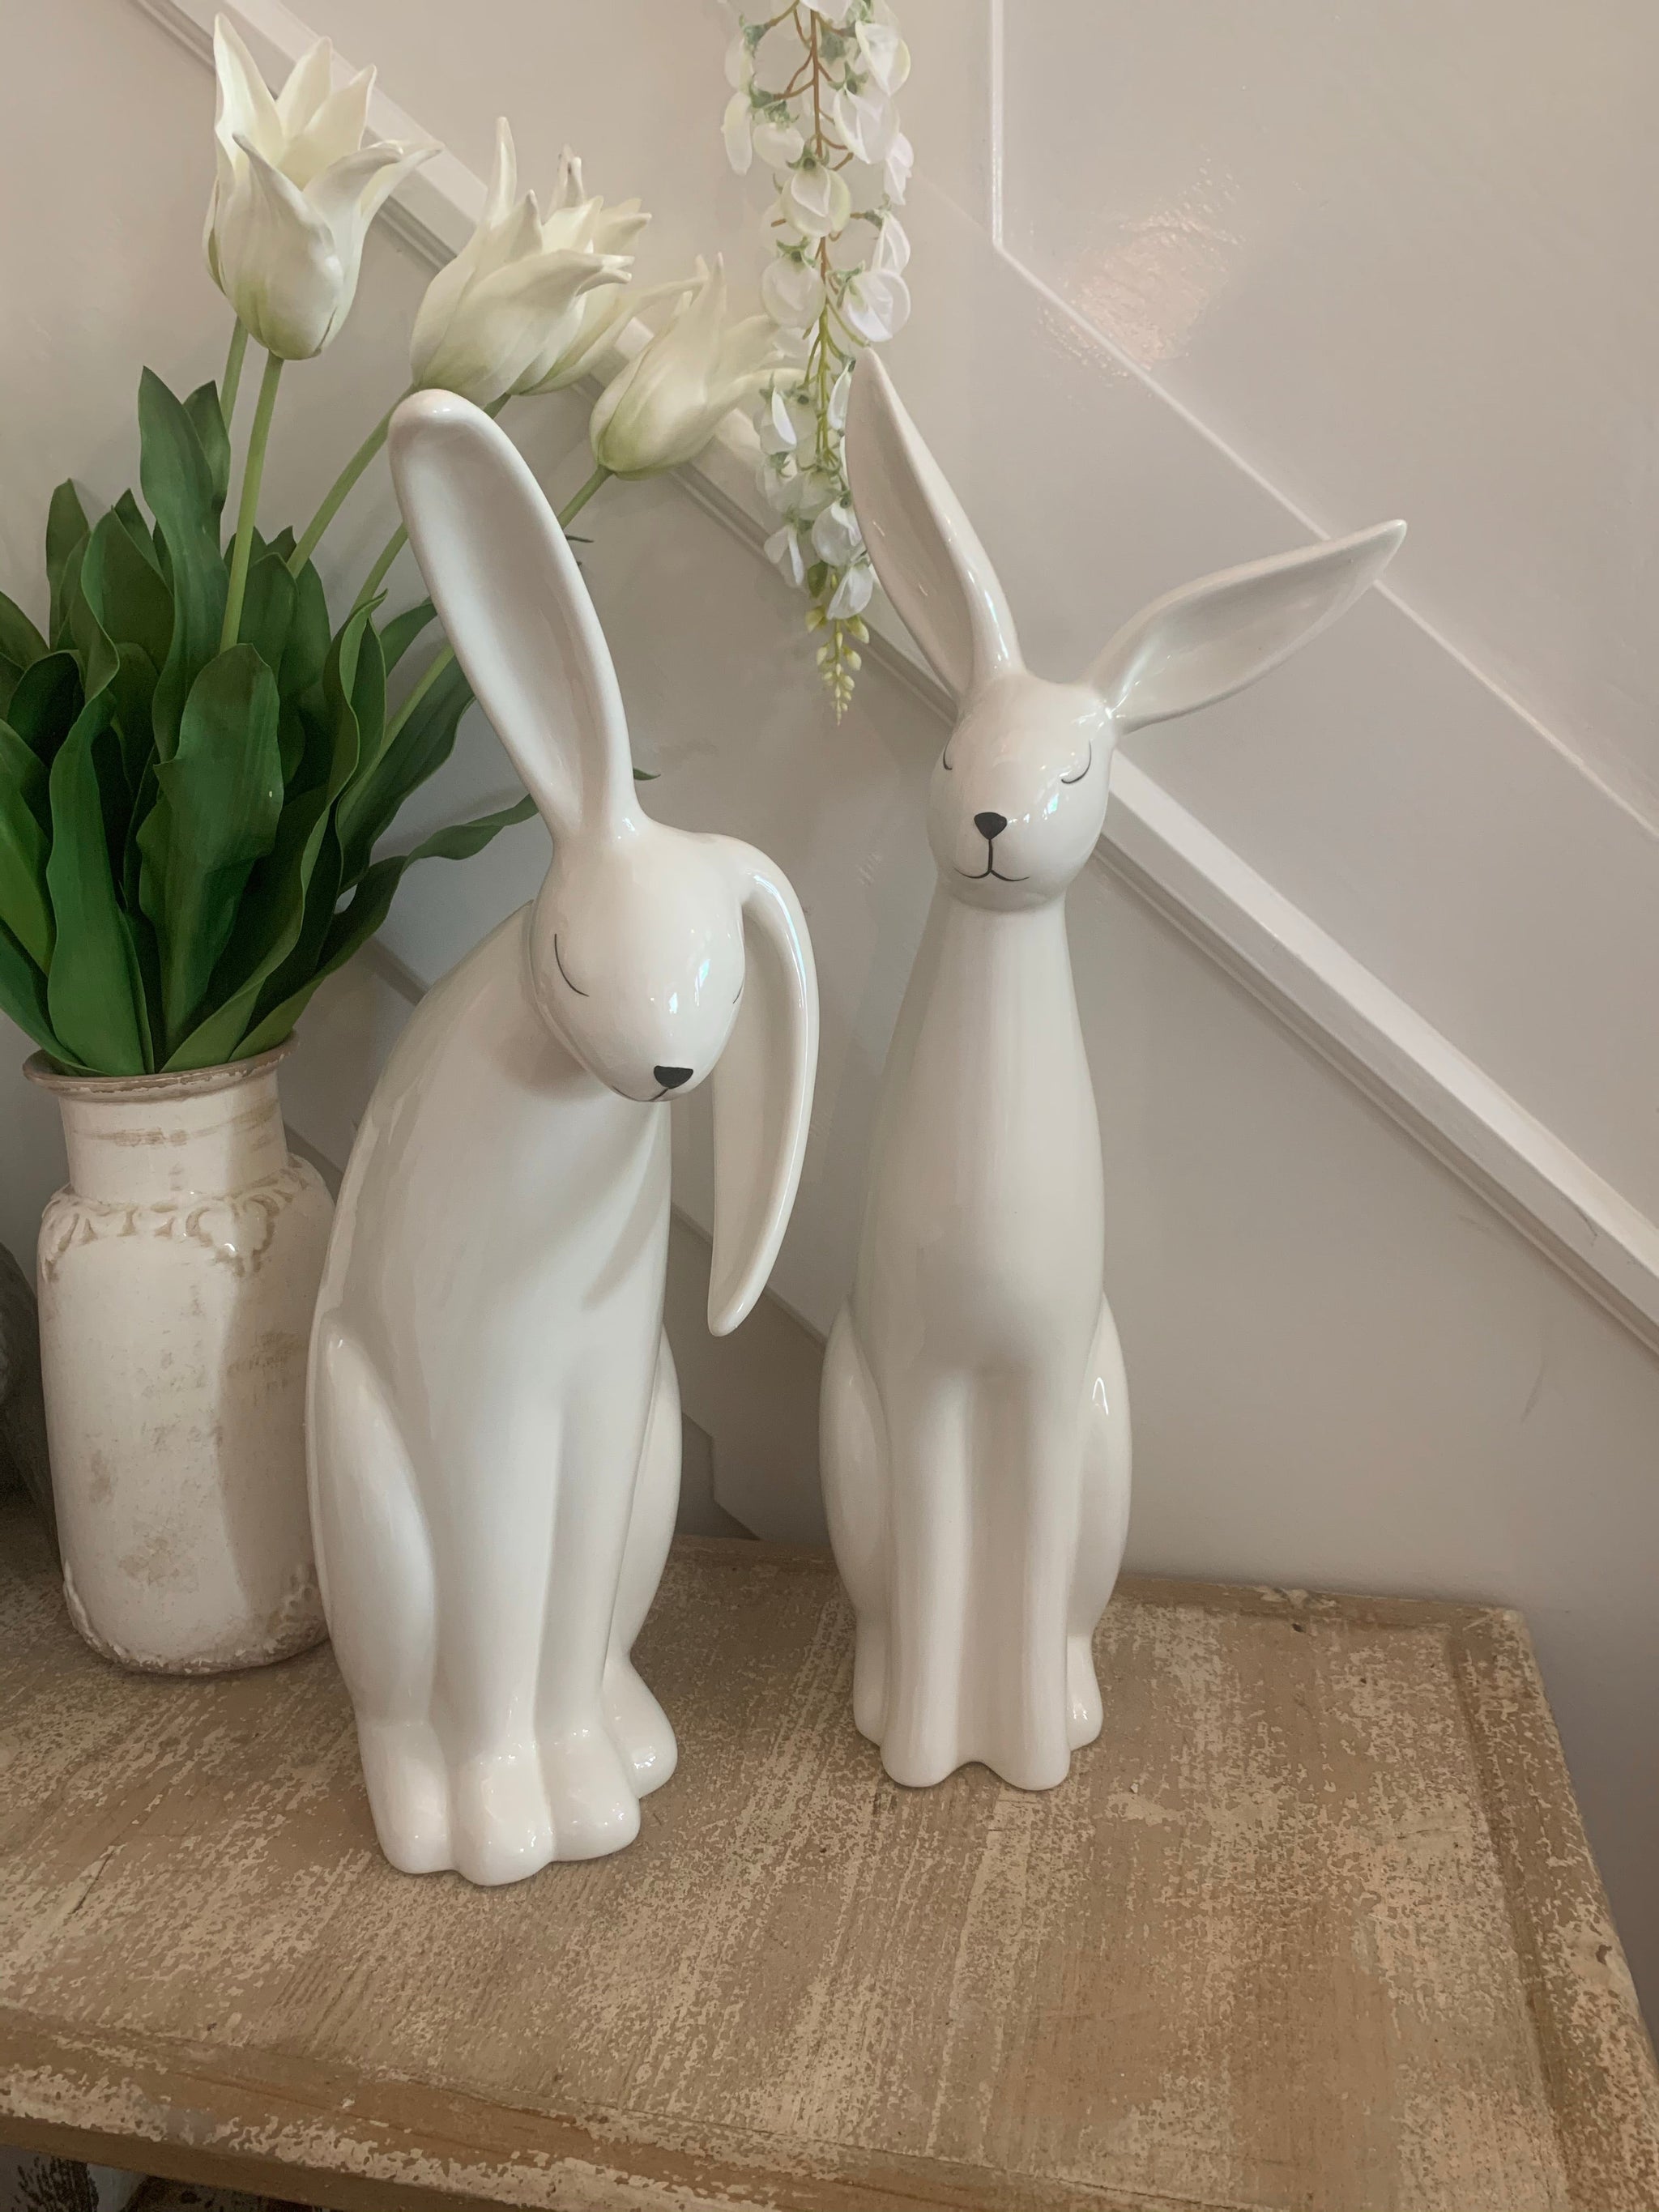 White ceramic rabbits